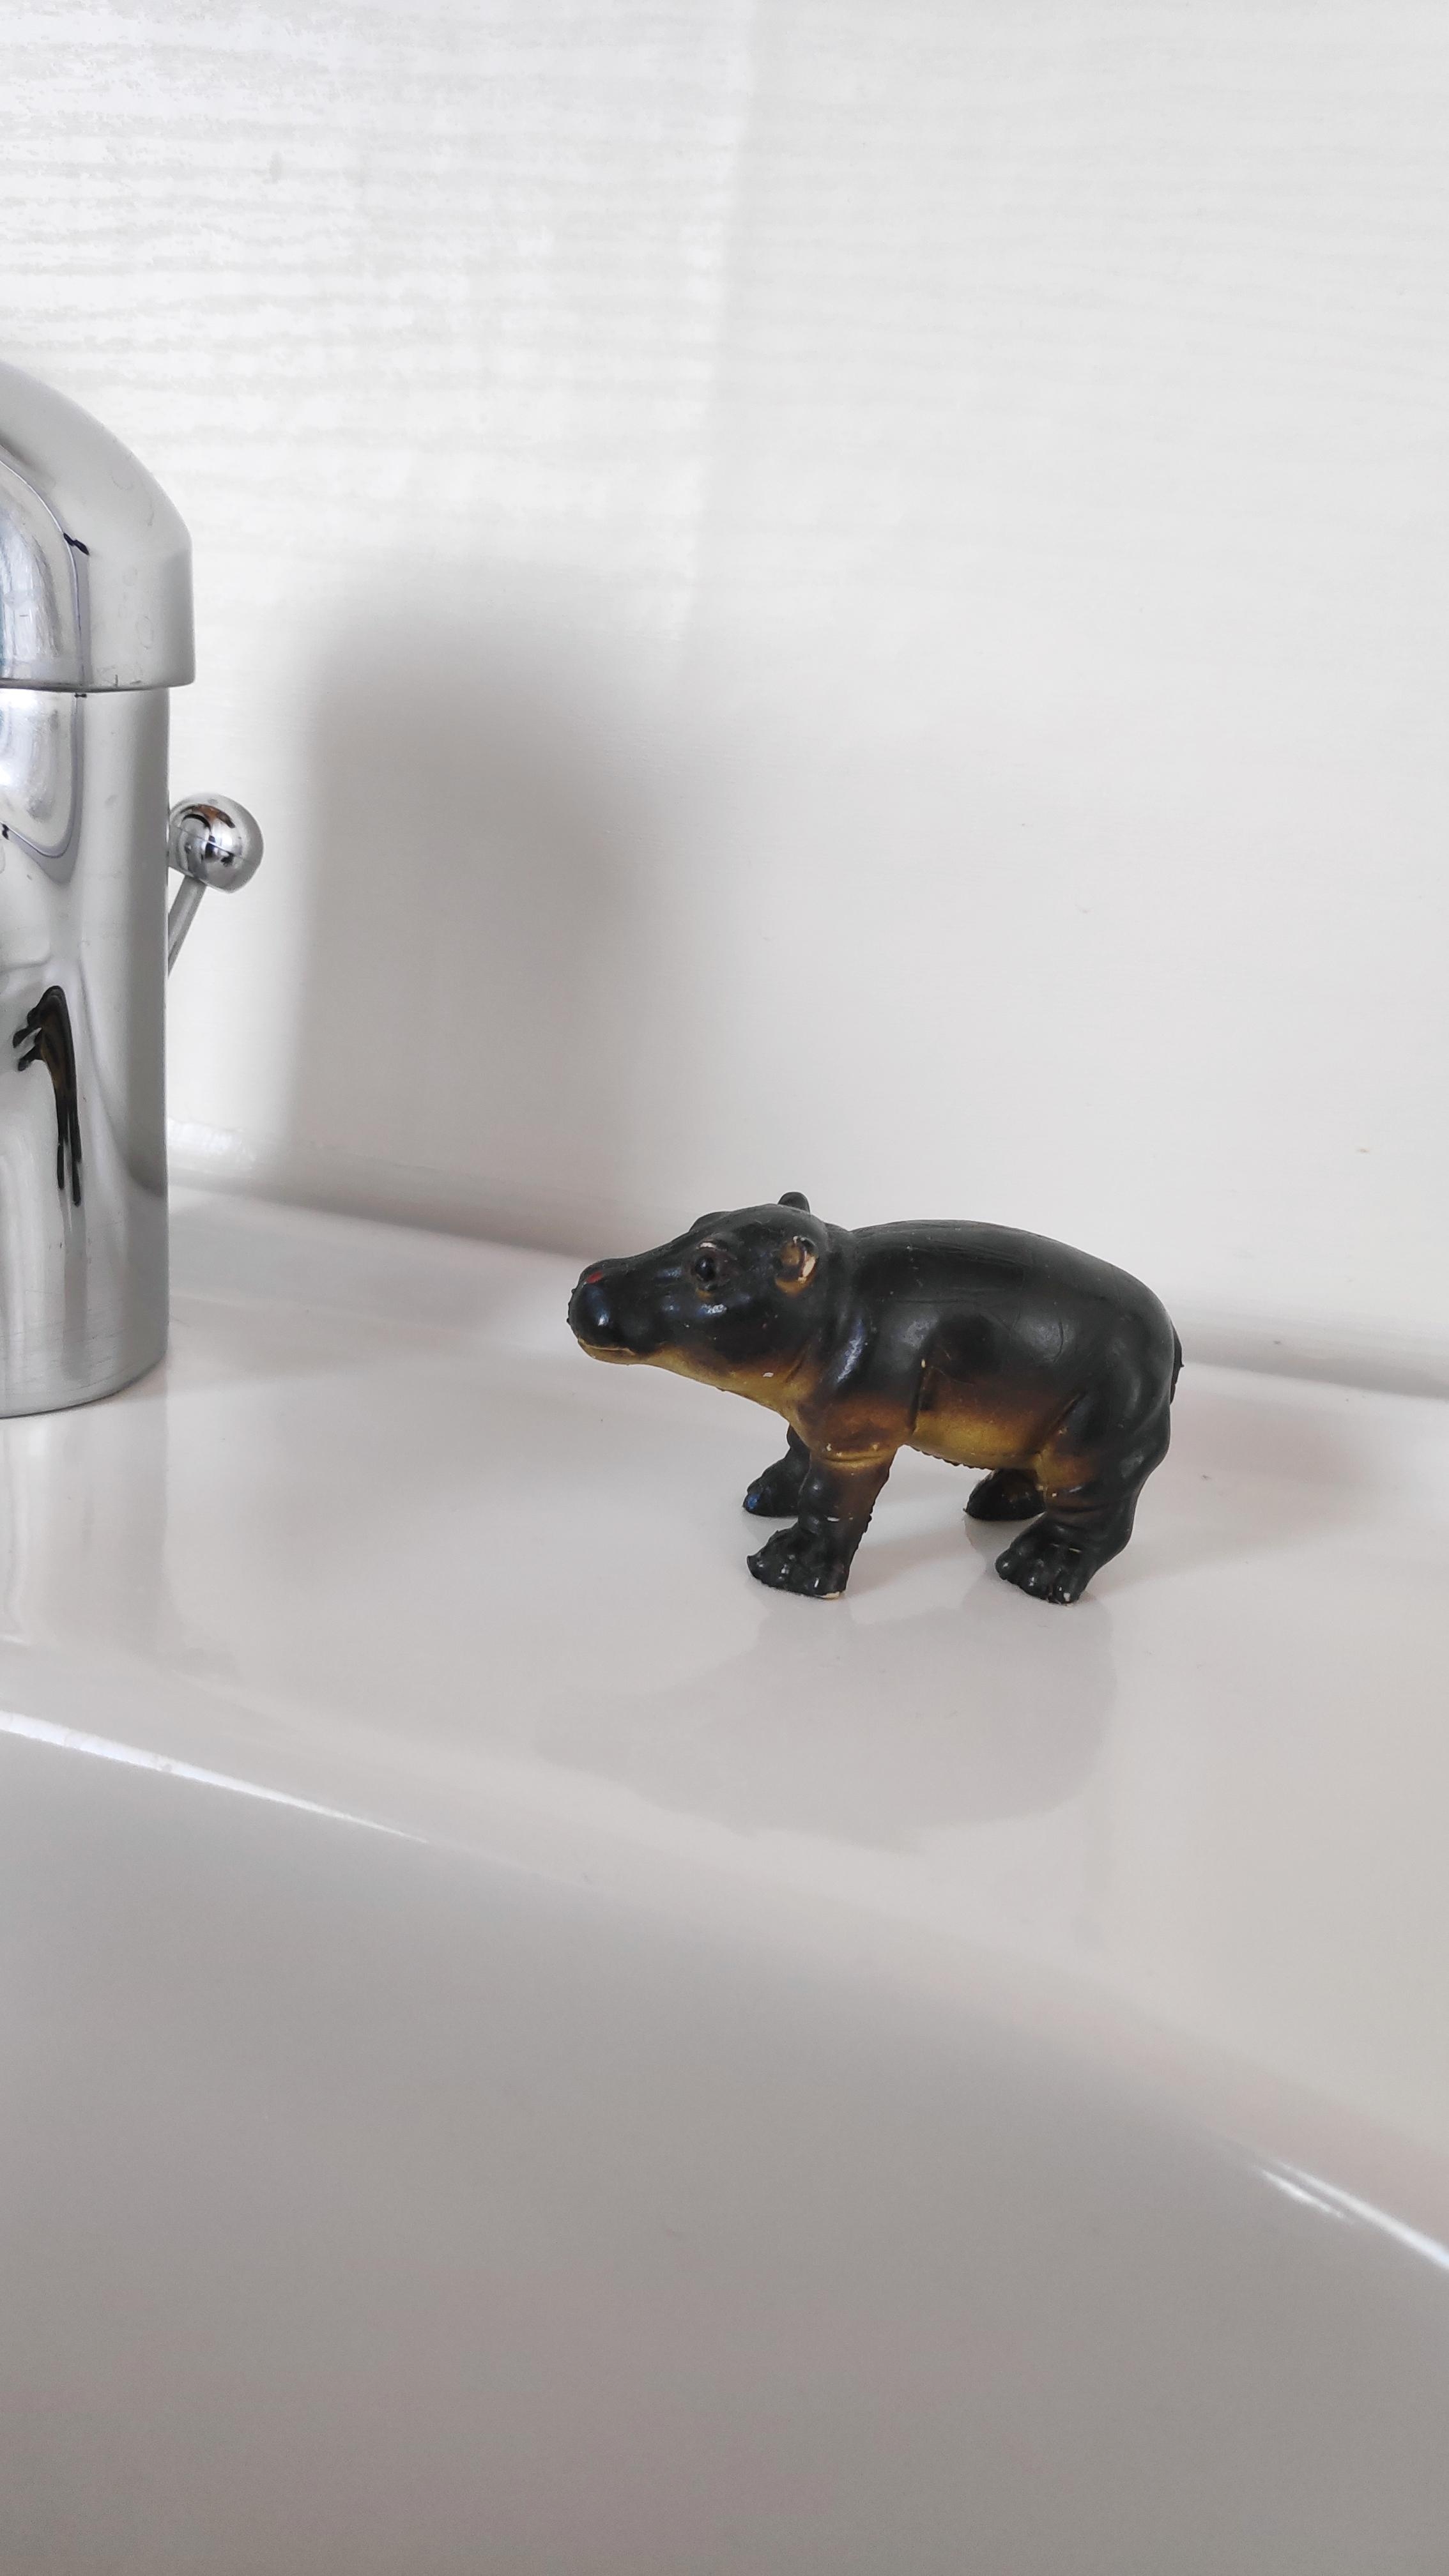 .Neuer Platz für das Nilpferd. 
.Details im Bad.
#Badezimmer #Details #Deko #Waschbecken